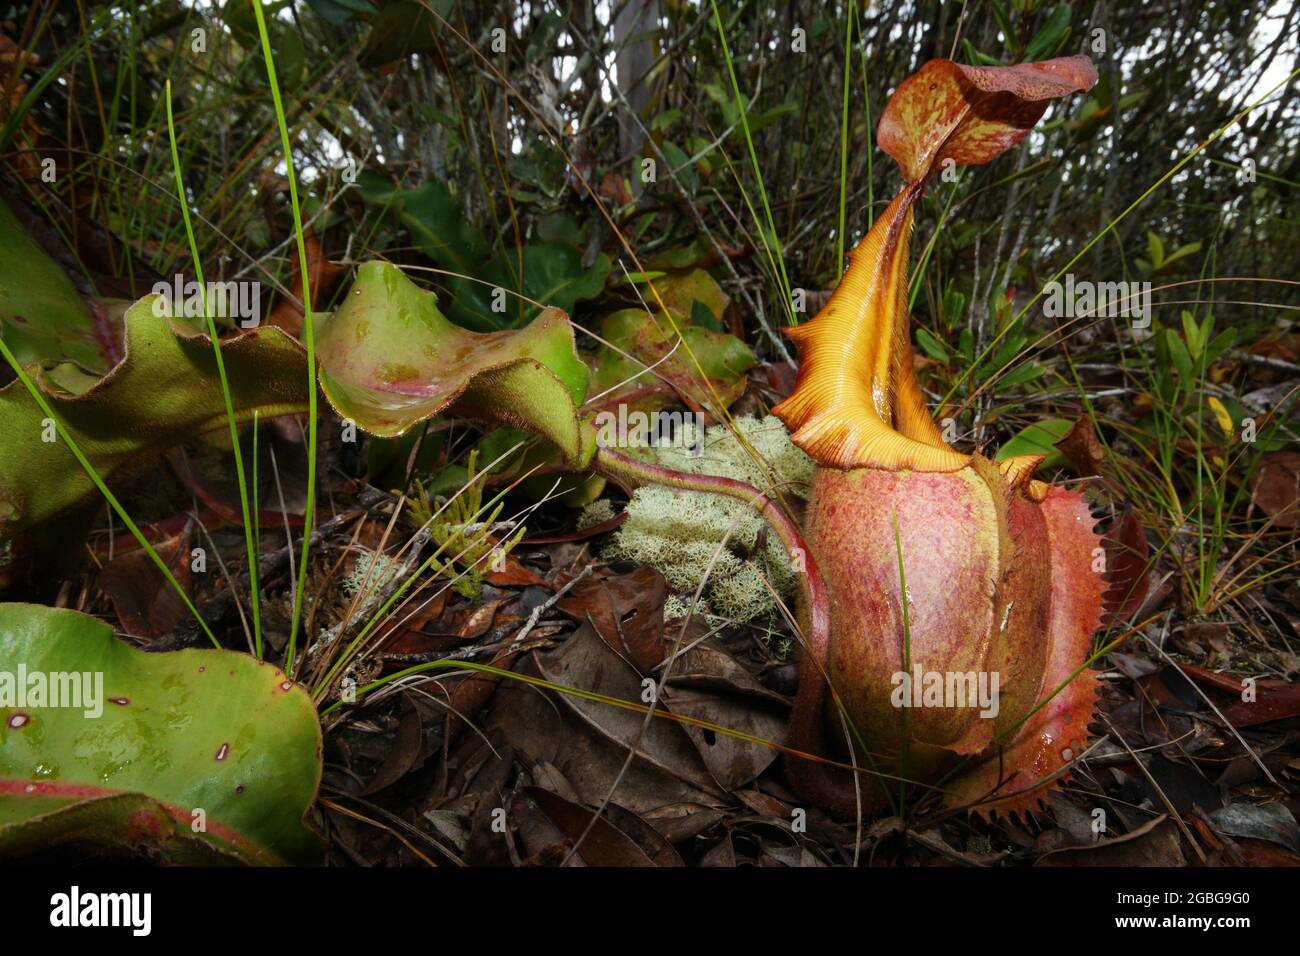 Pianta carnivora di caraffa Nepenthes veitchii, Borneo, Malesia, vista laterale Foto Stock